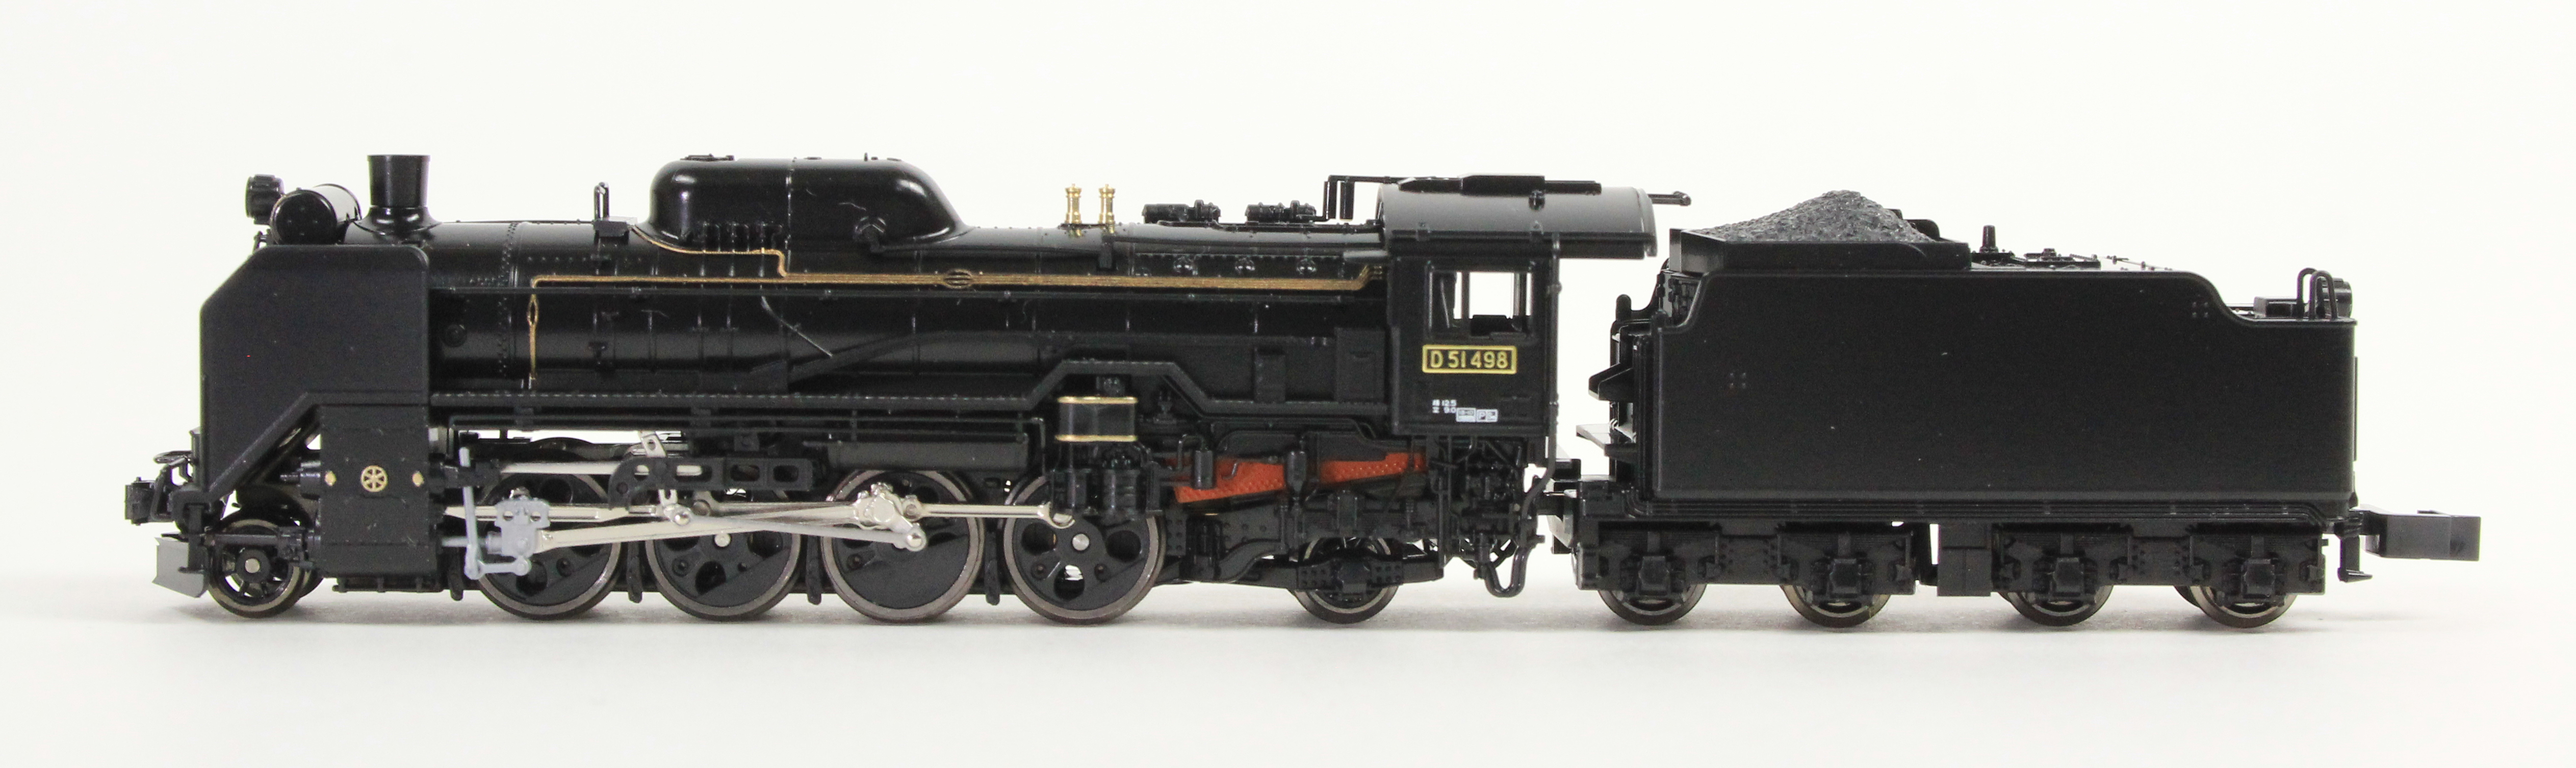 人気絶頂 KATO 2016-7 D51 498号機 蒸気機関車 nゲージ 鉄道模型 